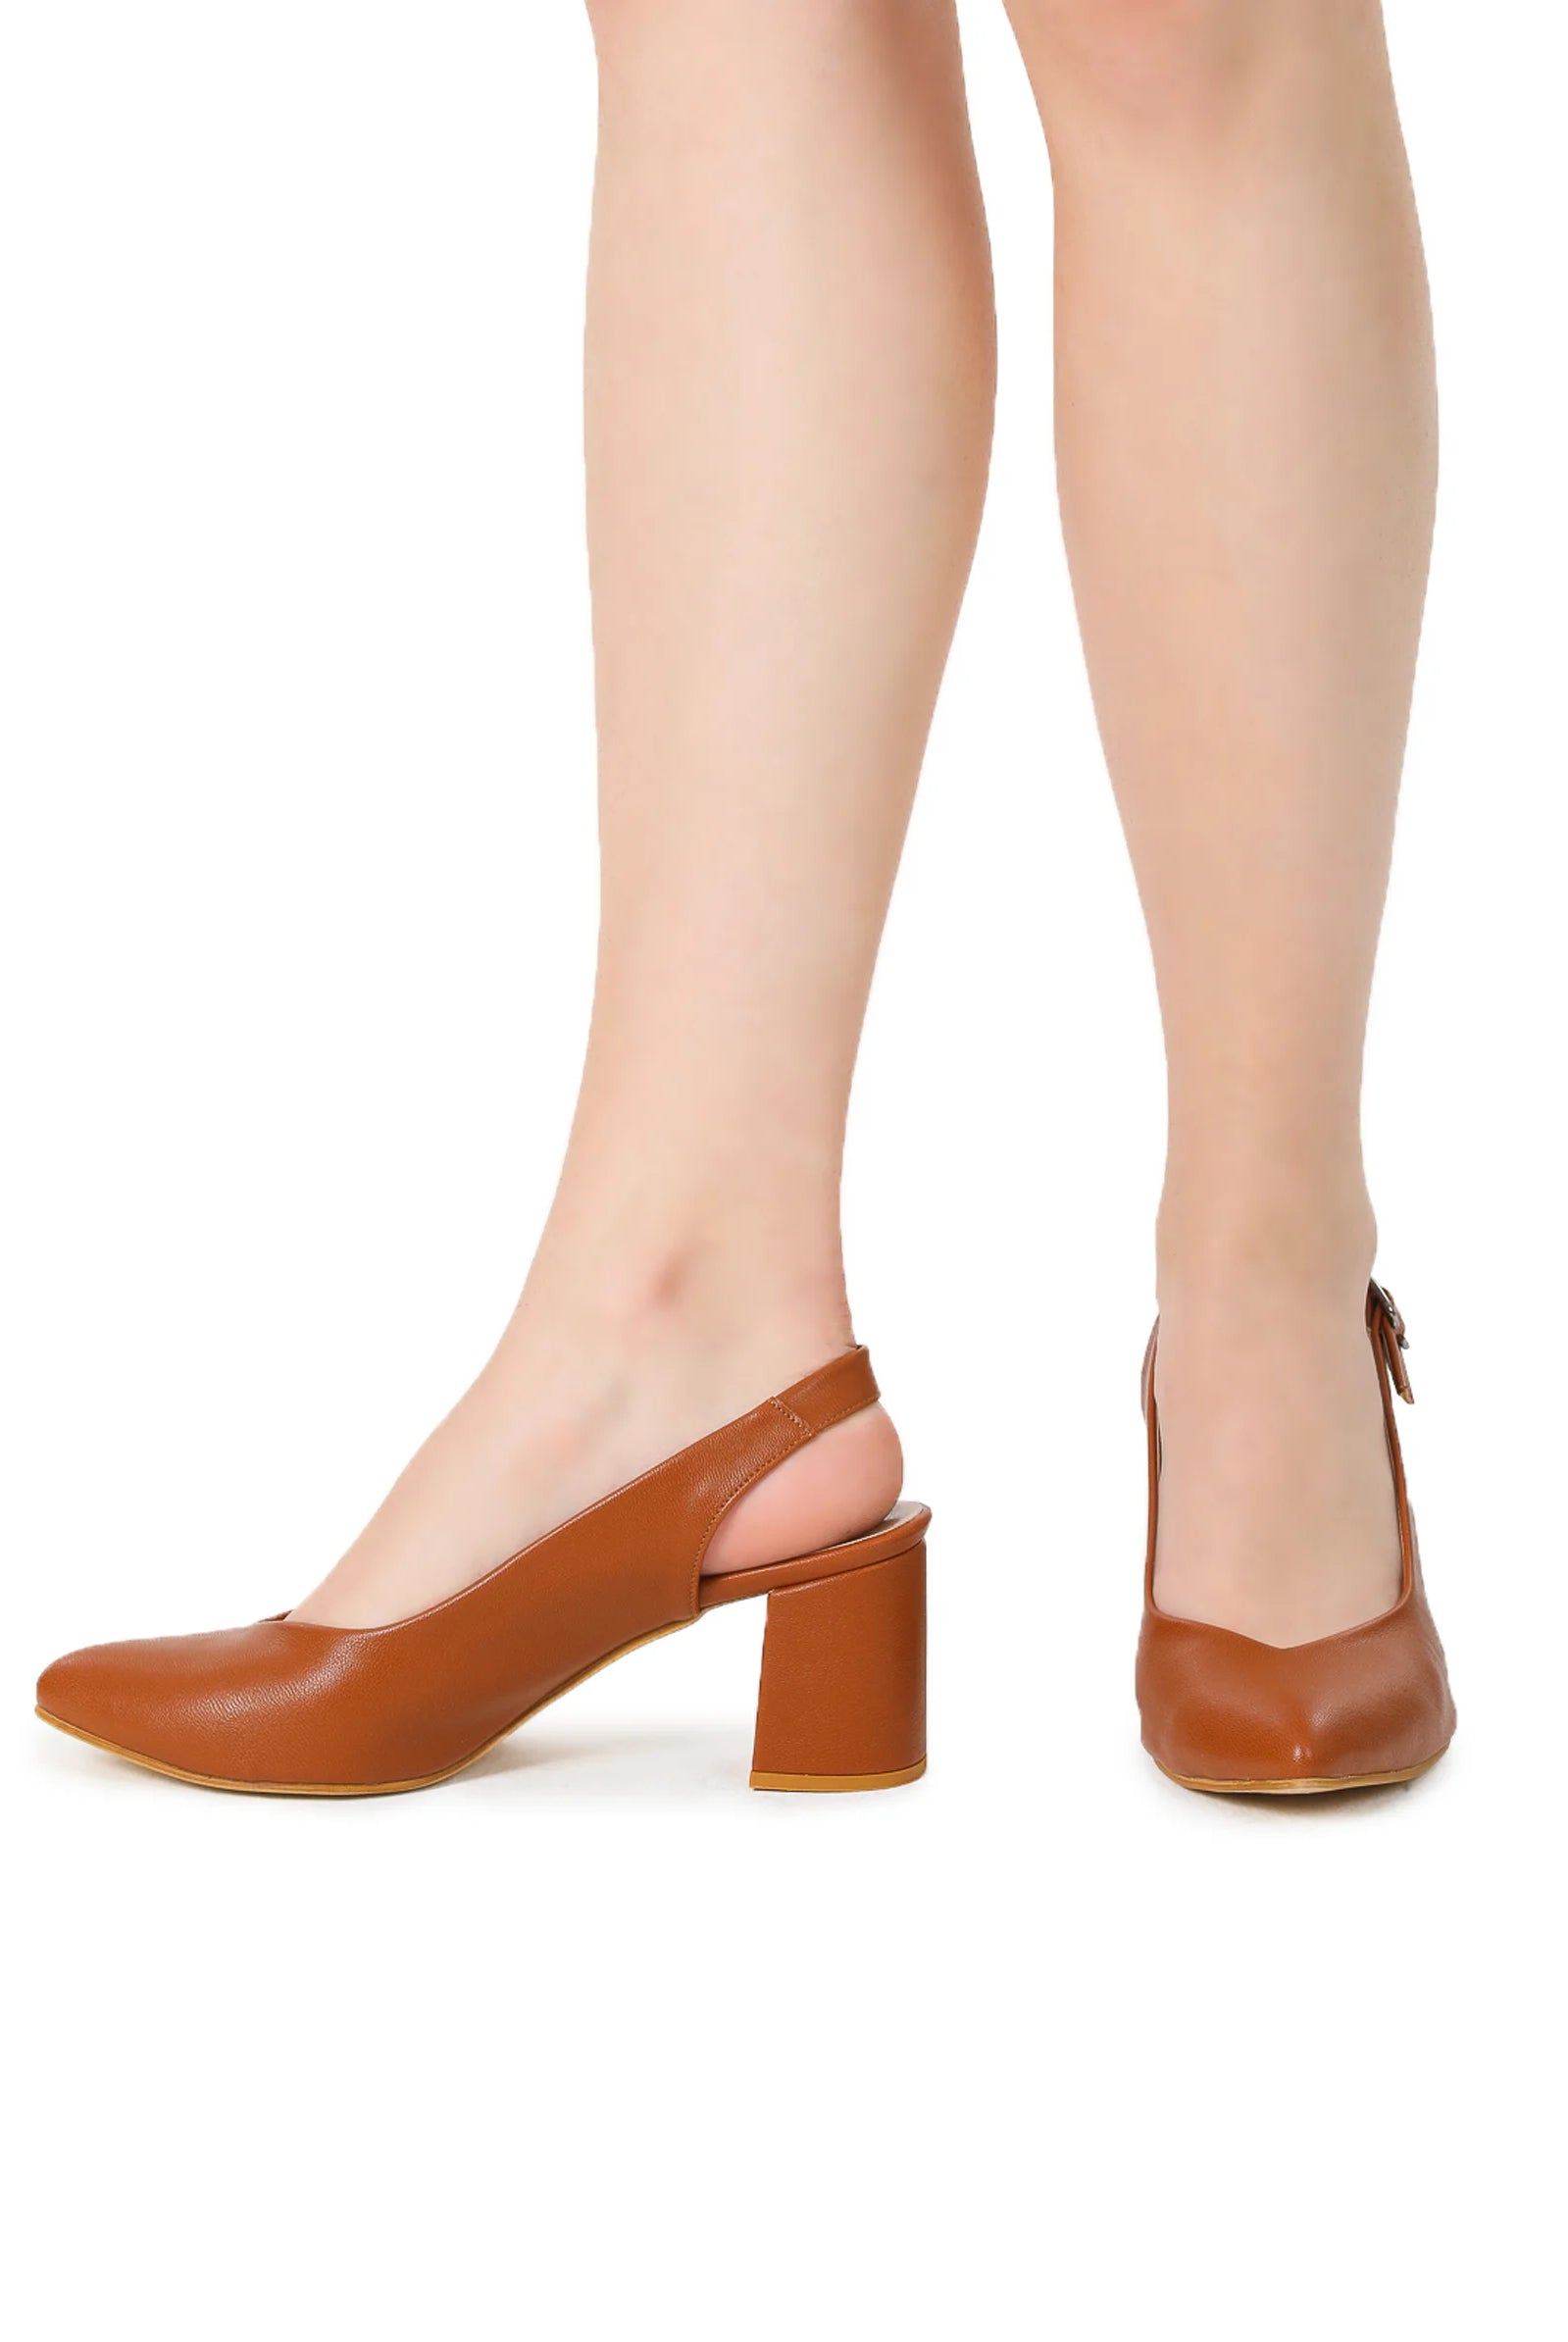 brown court shoes mid heel